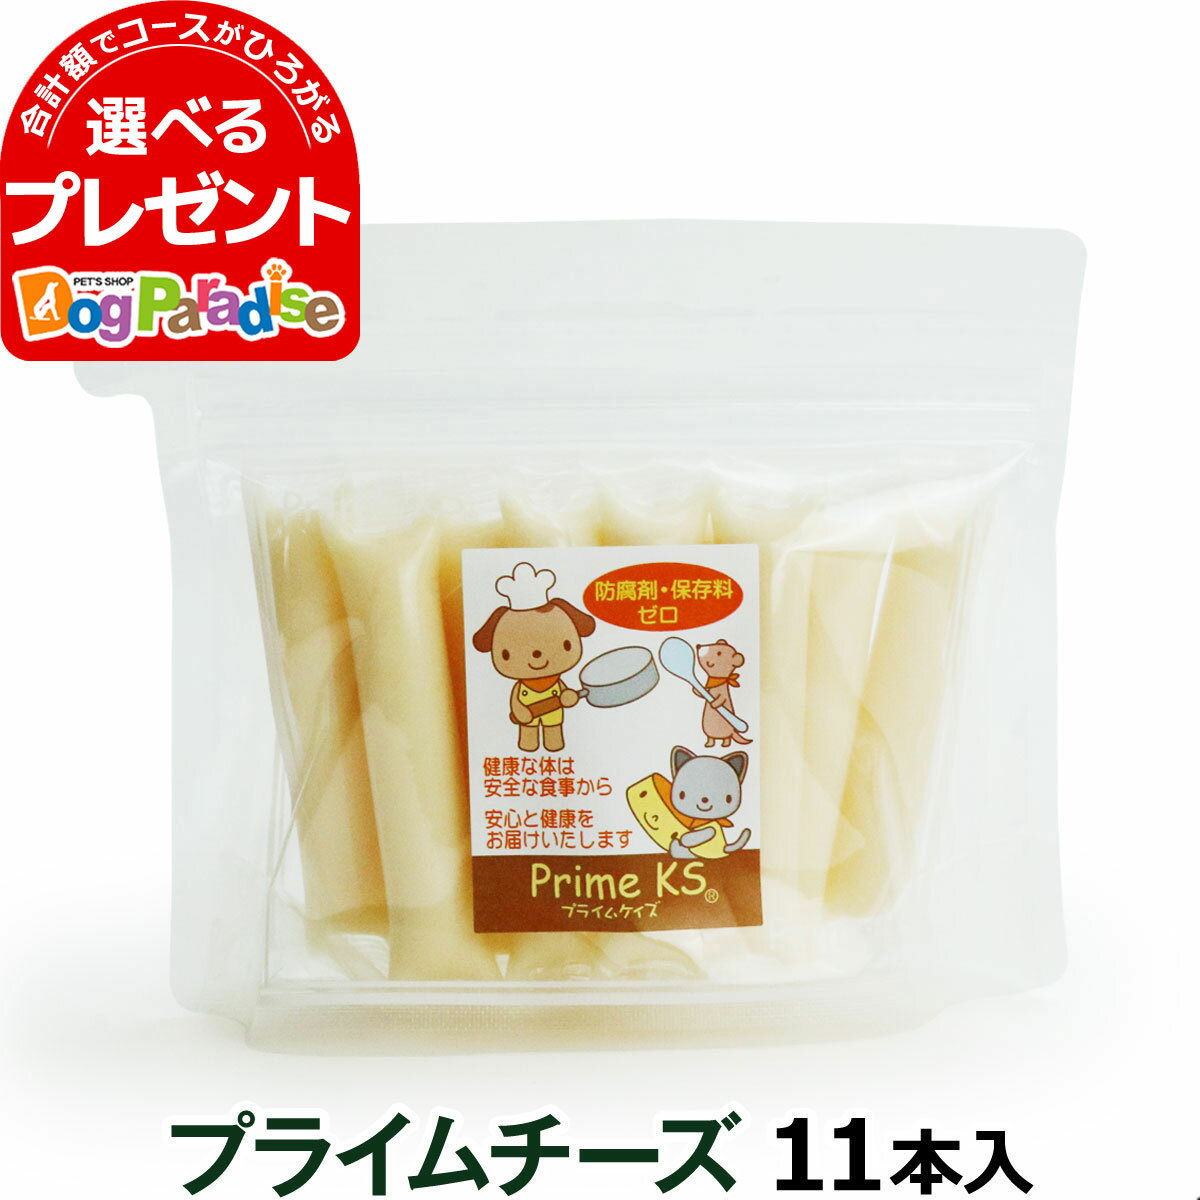 プライムケイズ プライムチーズ 11本|ドッグフ...の商品画像